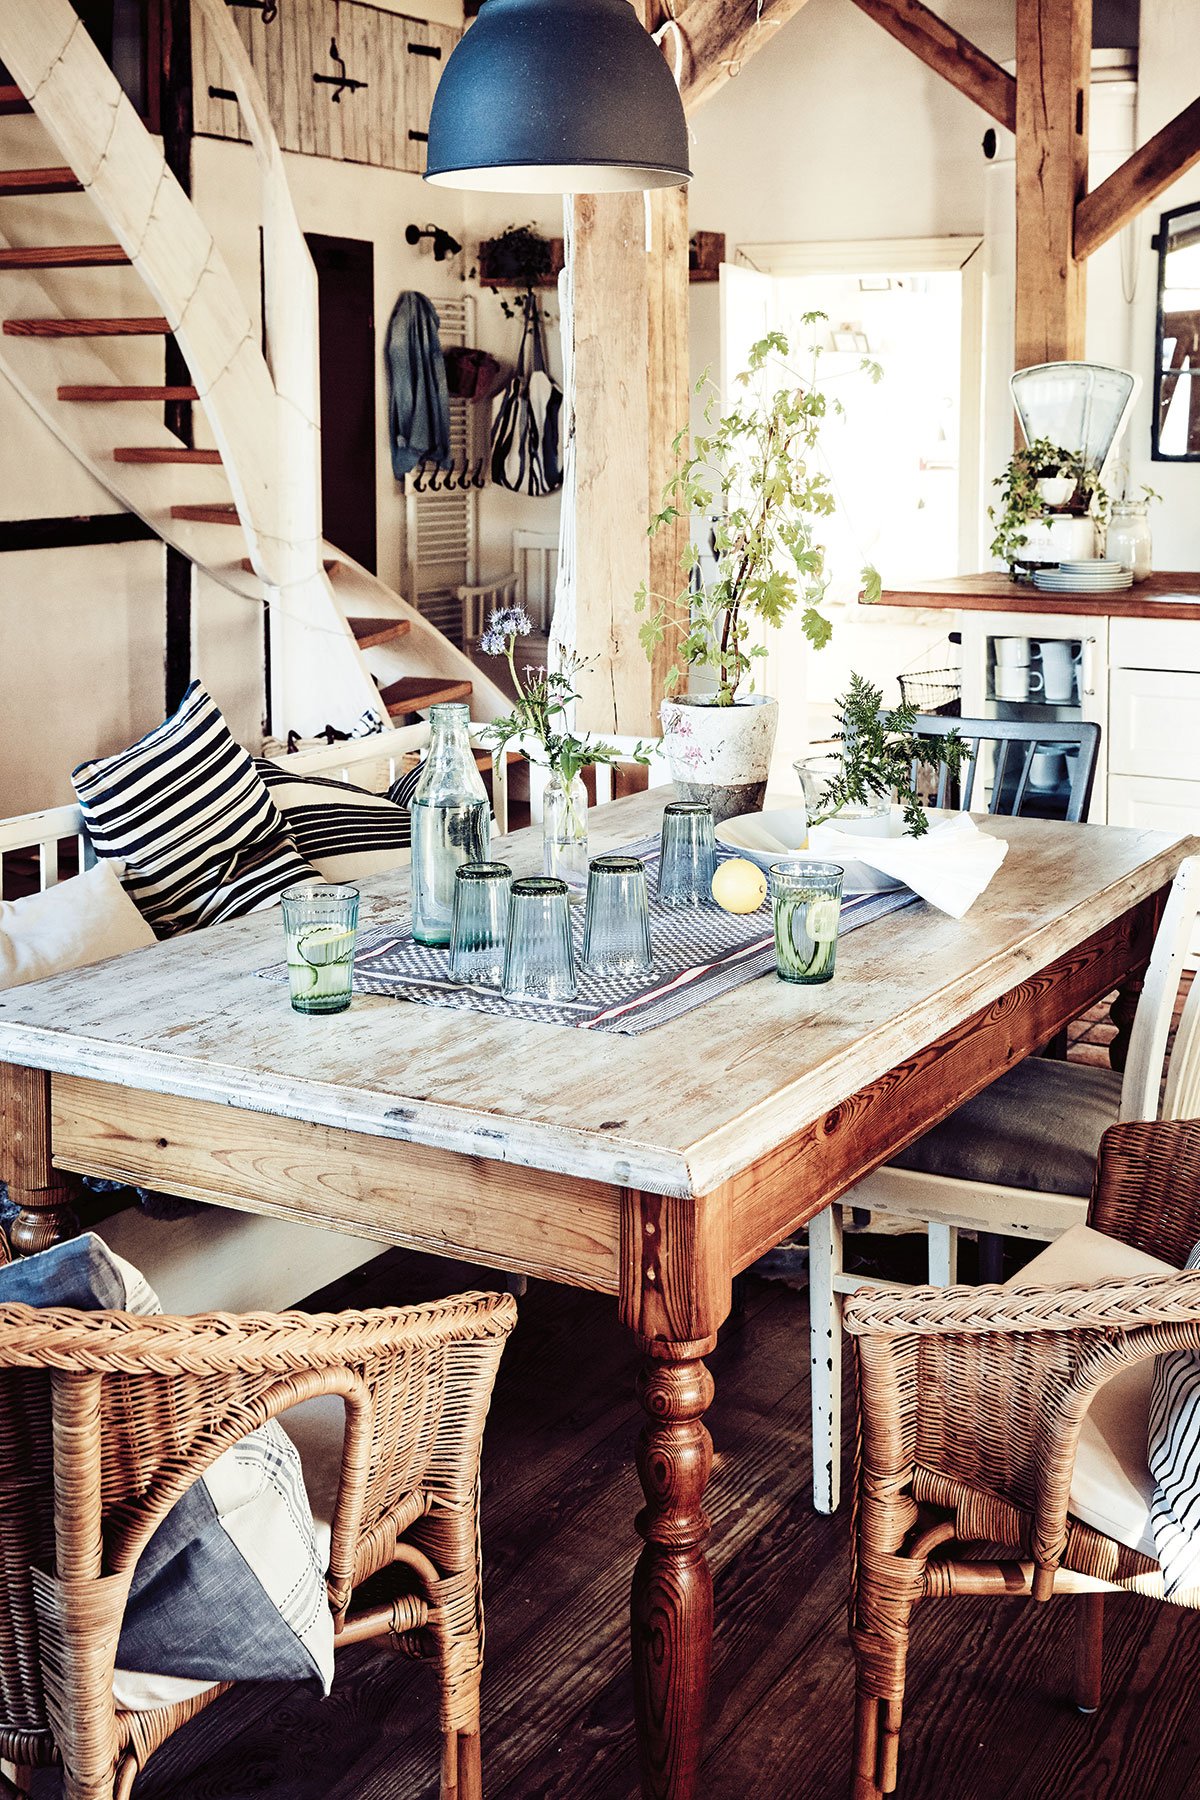 jídelna ve venkovském stylu, s dřevěným stolem, lavicí a proutěným křeslem, točitým schodištěm a dřevěnými trámy